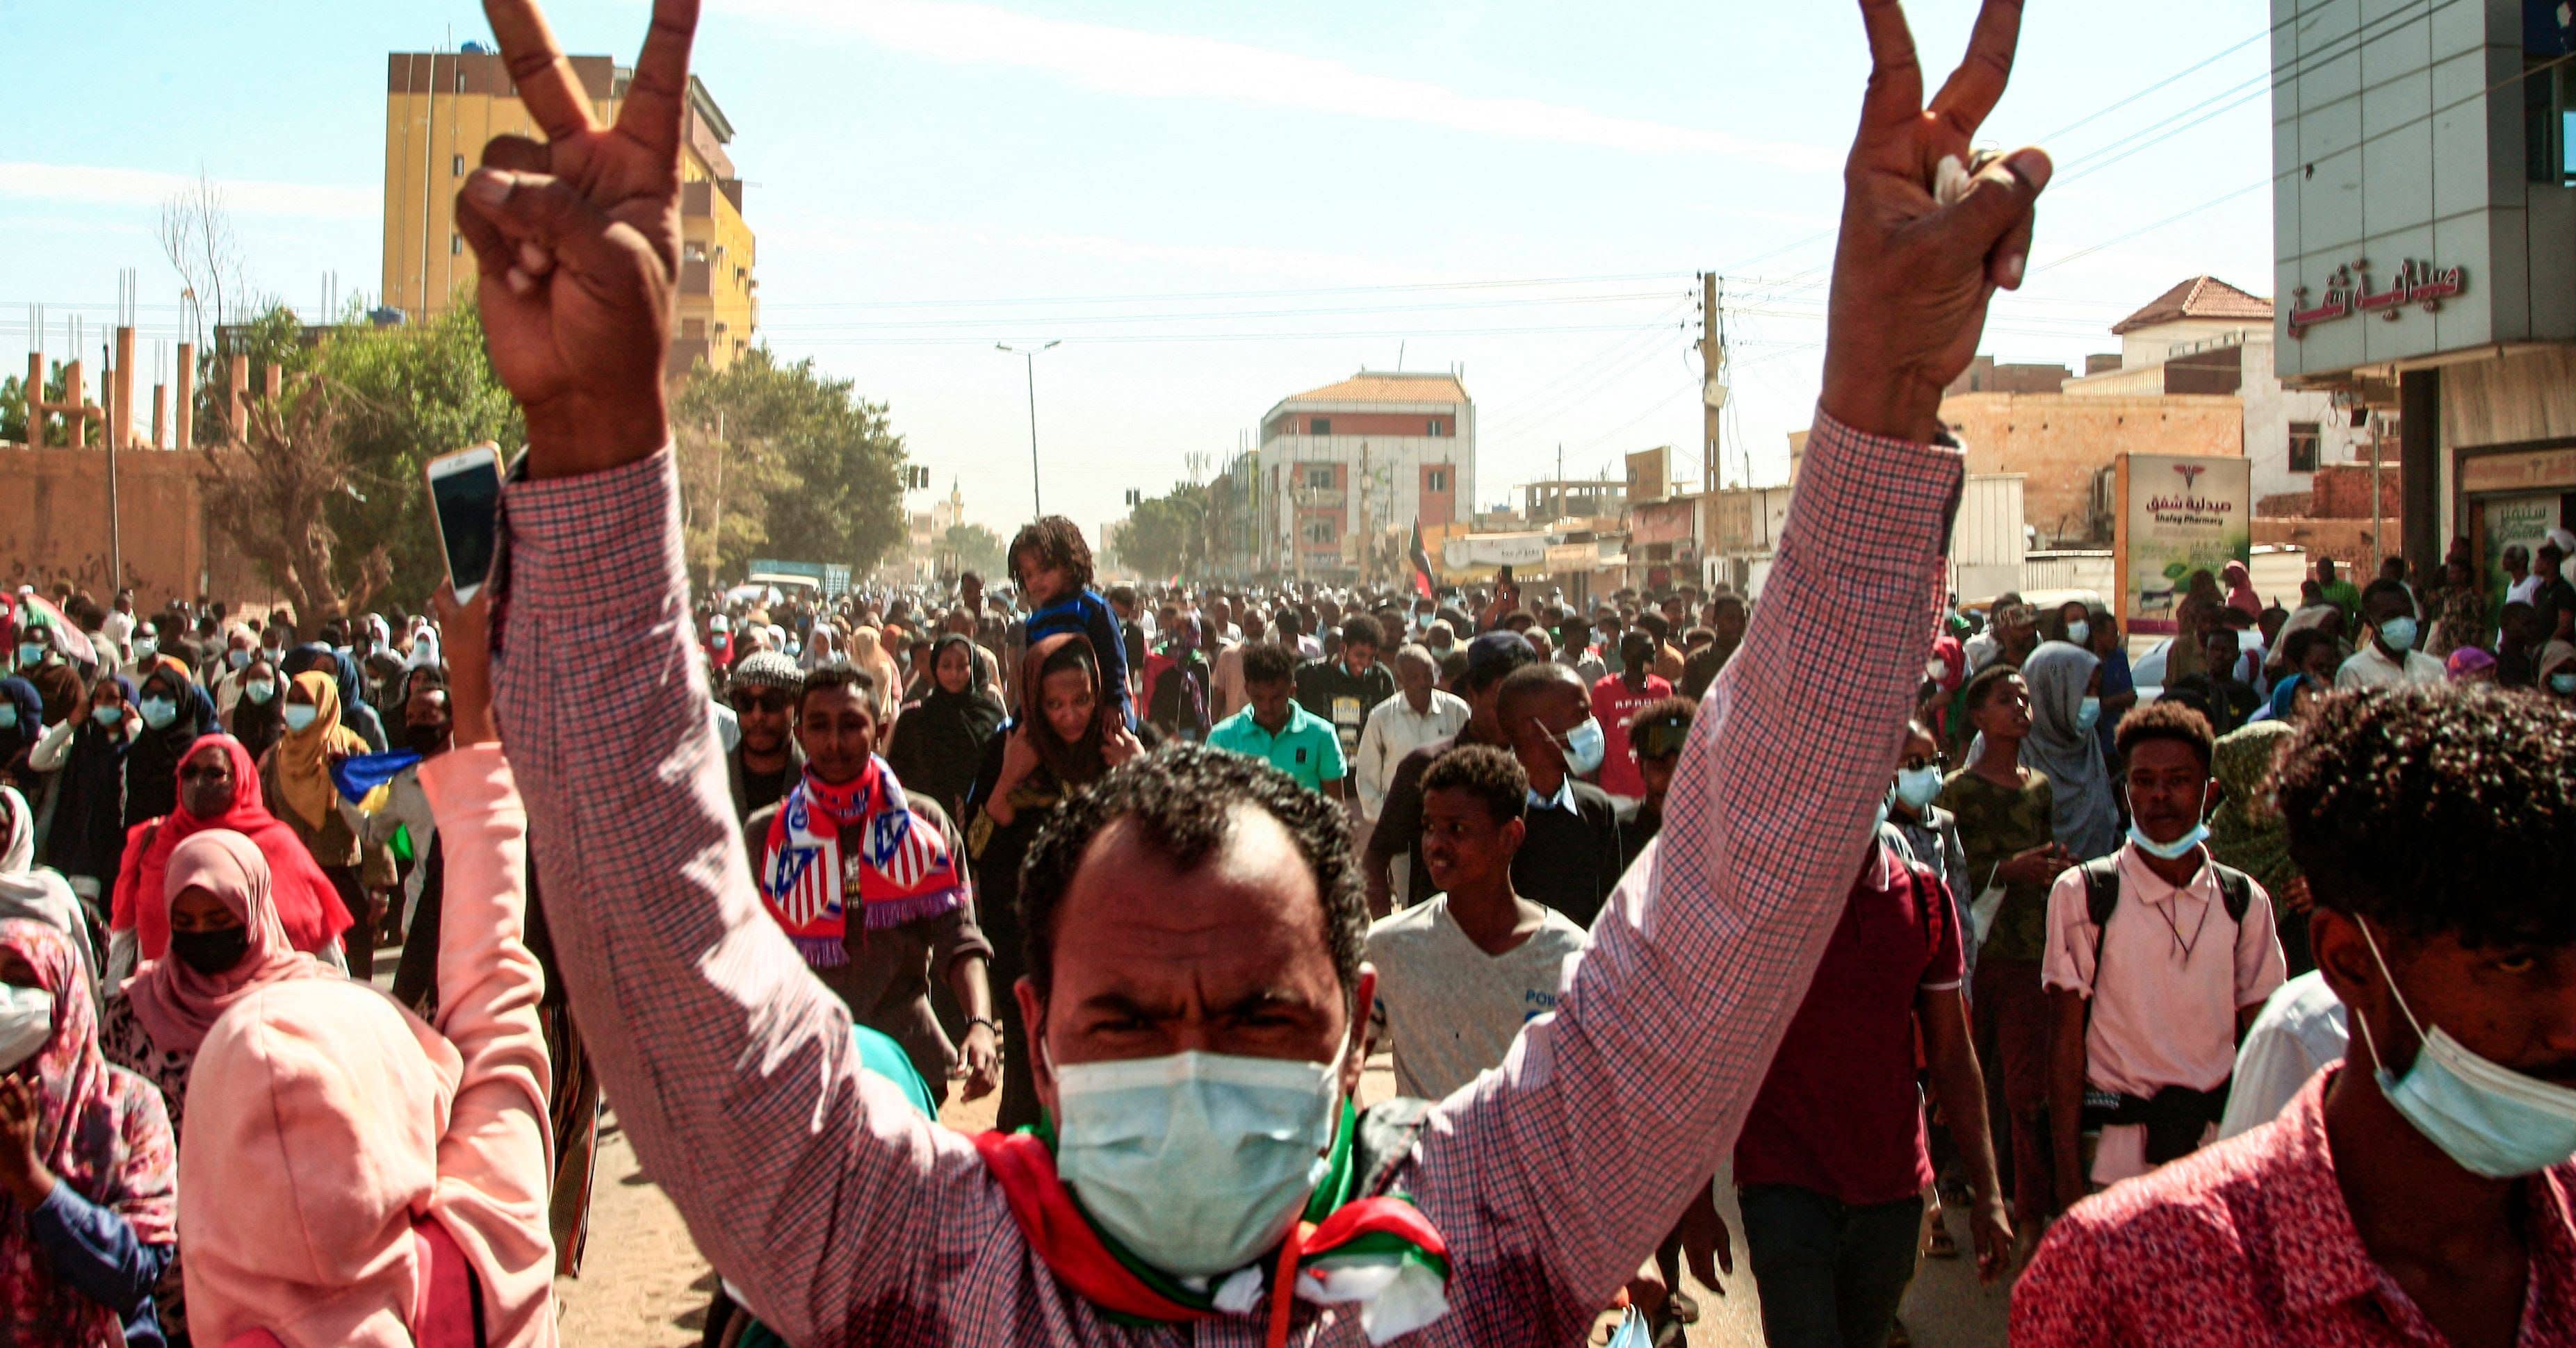 Sudanin pääministeri erosi virastaan – maan politiikka yhä kaaoksen partaalla sotilasvallankaappauksen jäljiltä